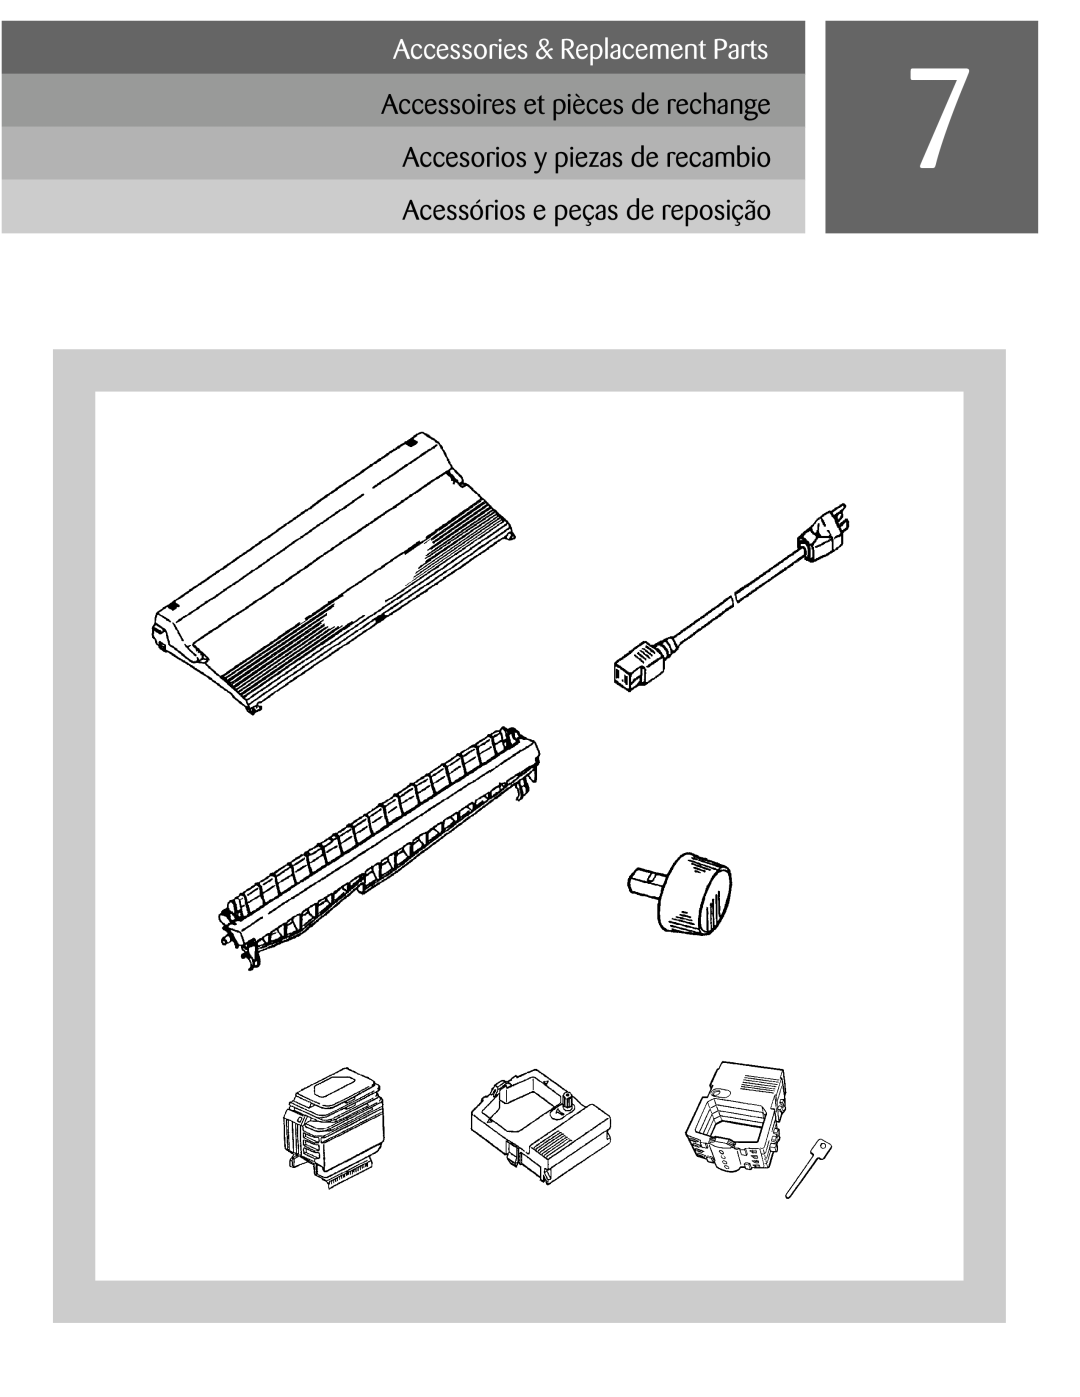 Oki ML590 manual Accessoires et pièces de rechange Accesorios y piezas de recambio, Acessórios e peças de reposição 